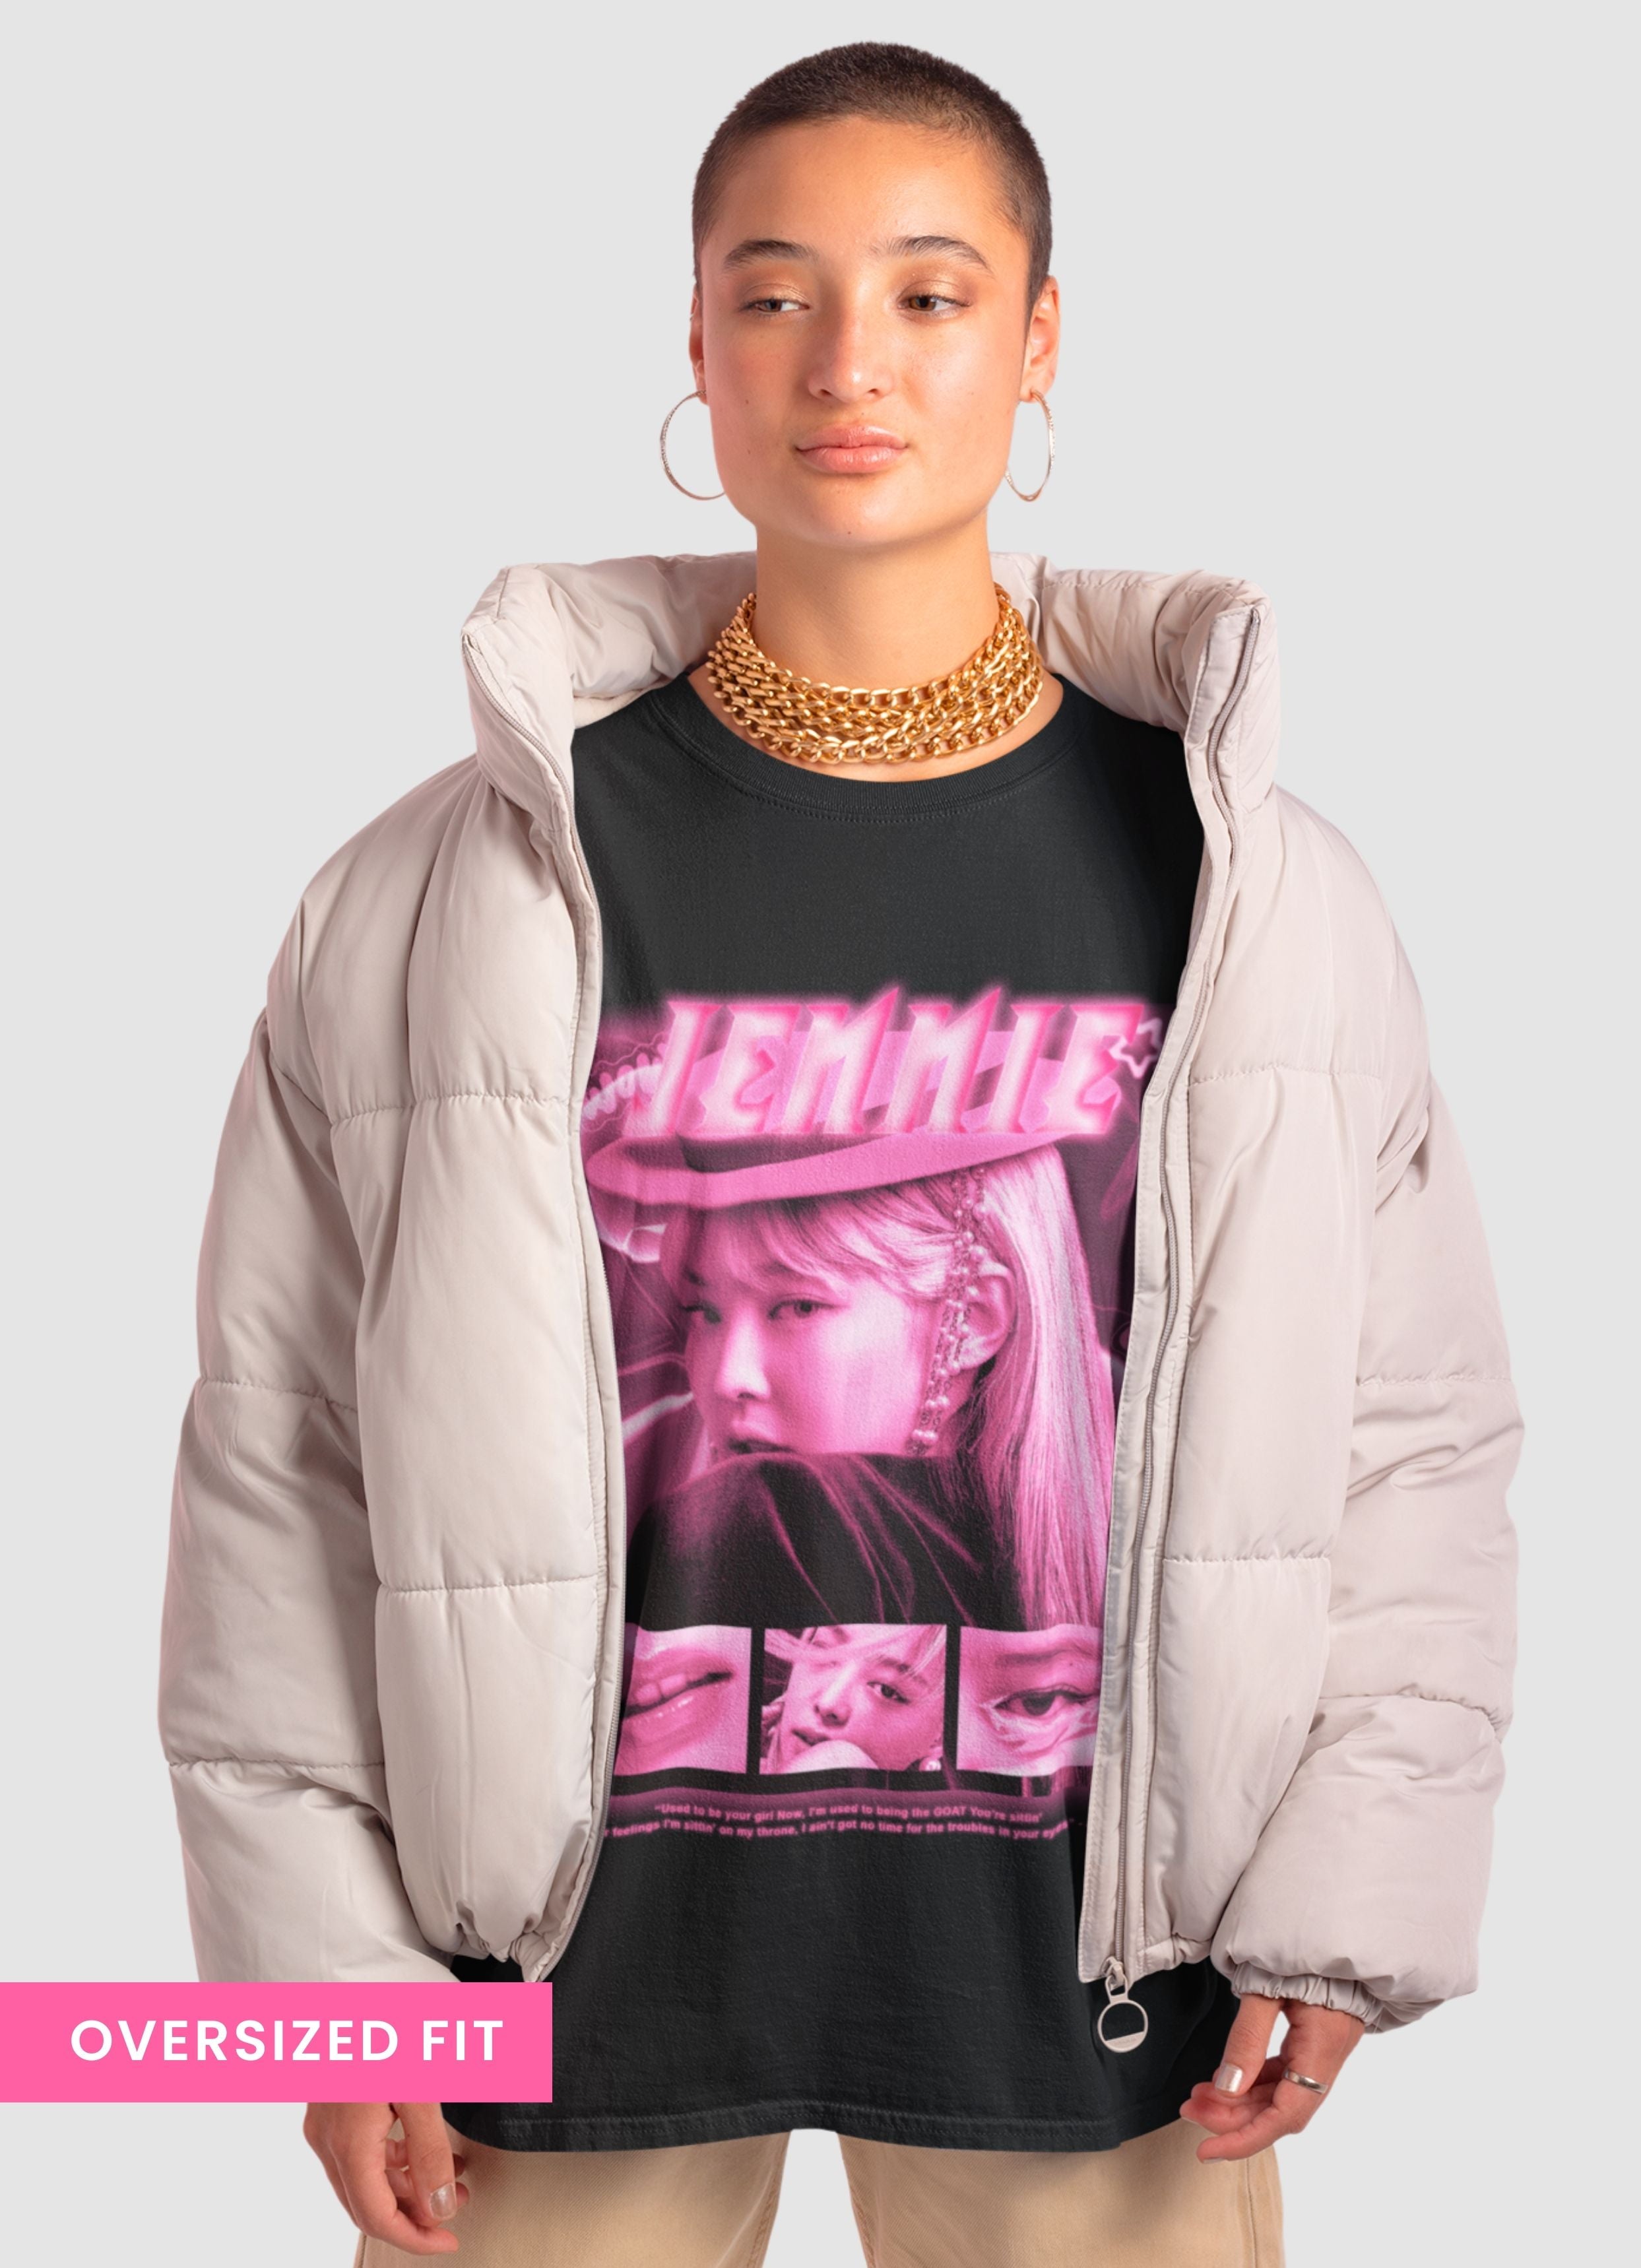 Jennie Bias Oversized Unisex Tshirt